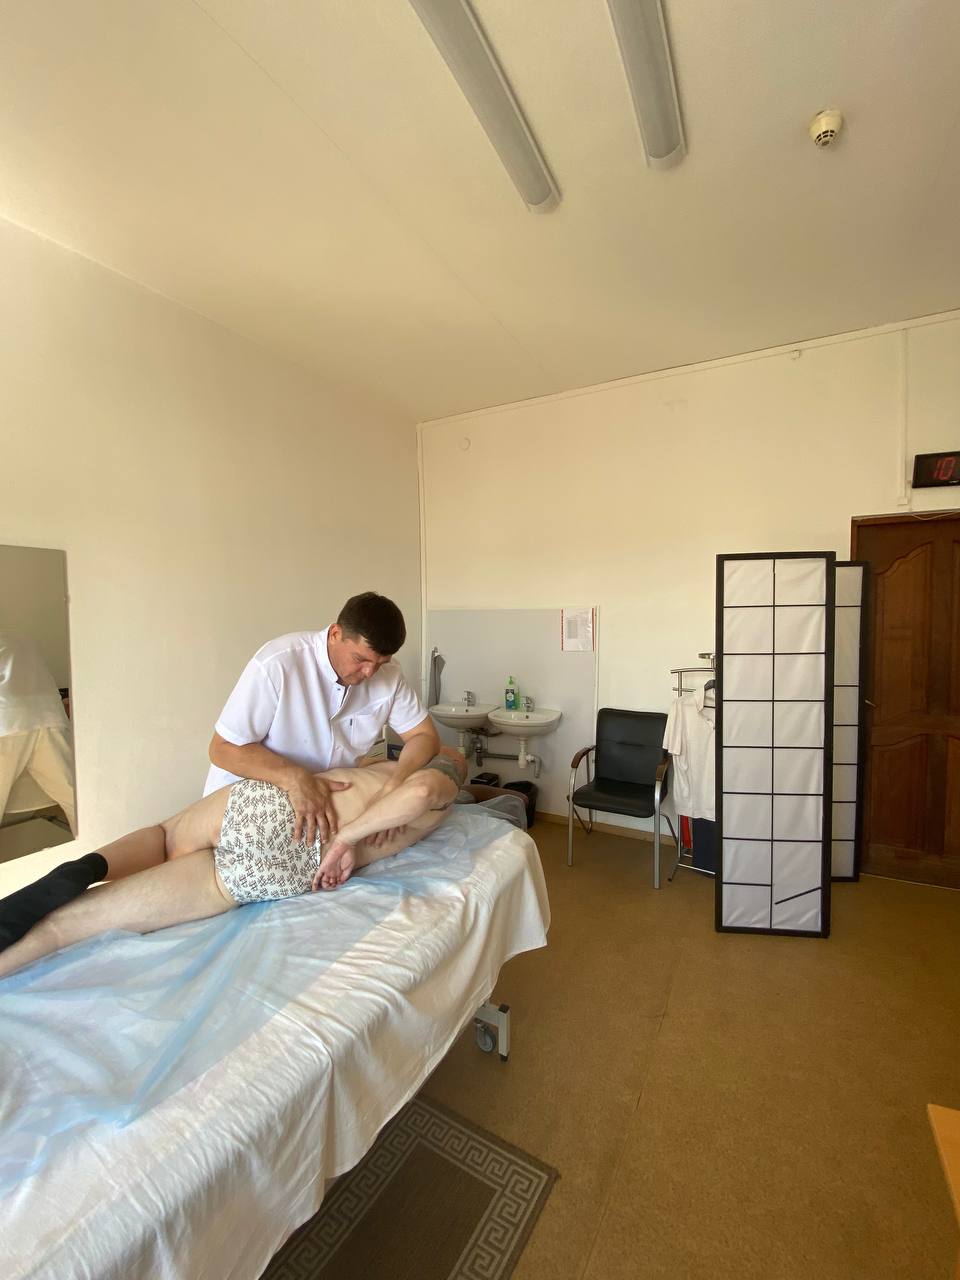 ассажист работает с пациентом на массажном столе, проводя мануальную терапию на области нижней части спины.